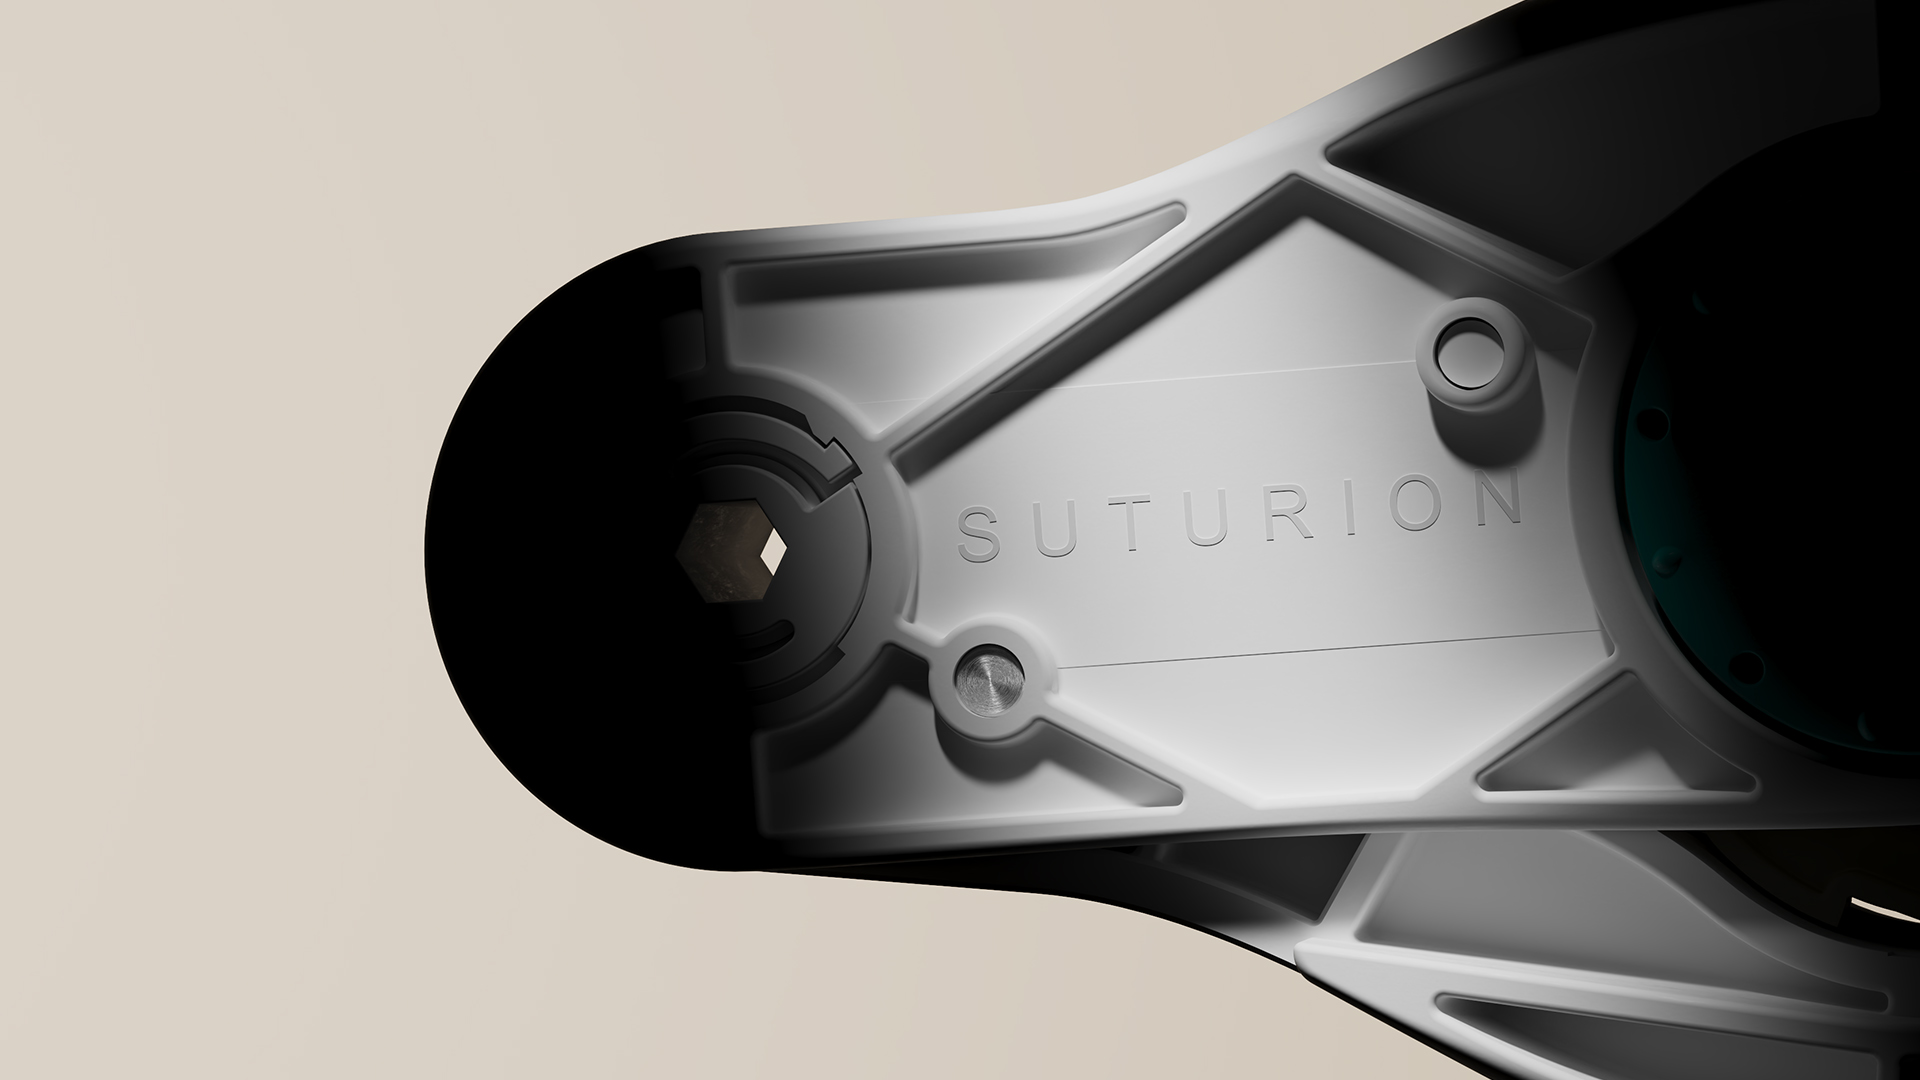 Suturion har utvecklat en kirugisk symaskin som försluter bukväggen